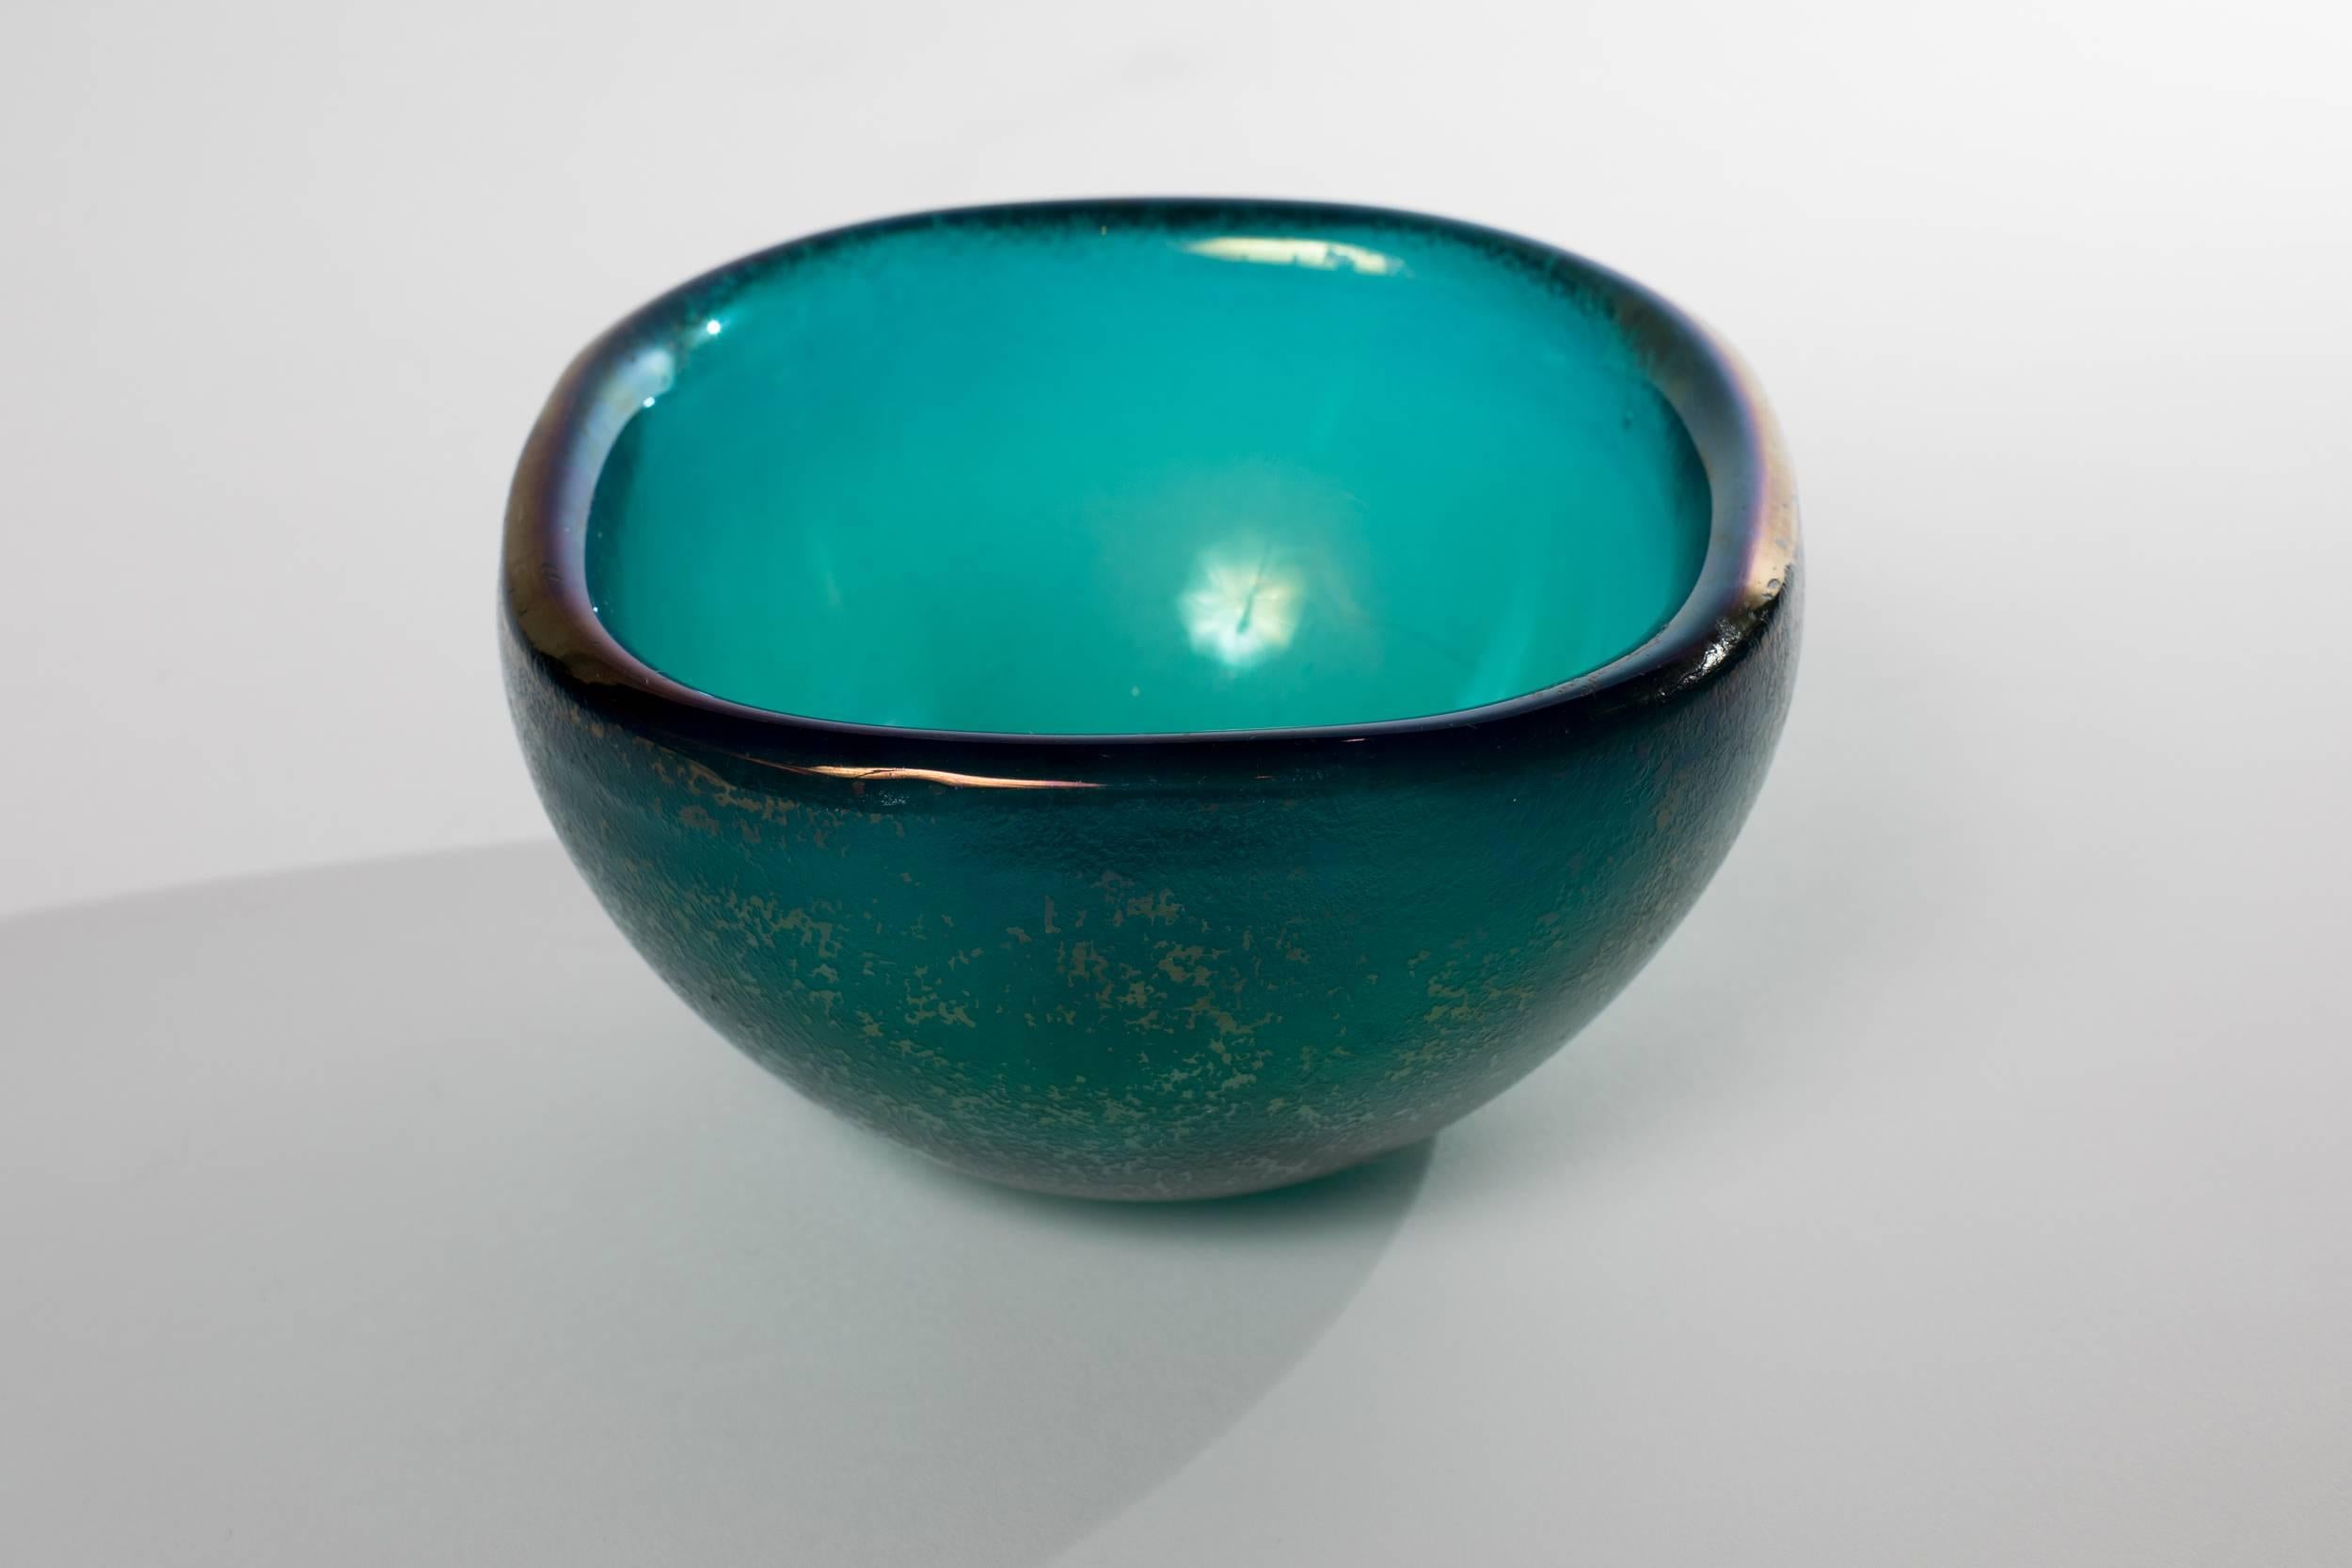 Vibrant blue color Italian Corroso glass bowl attributed to Carlo Scarpa.